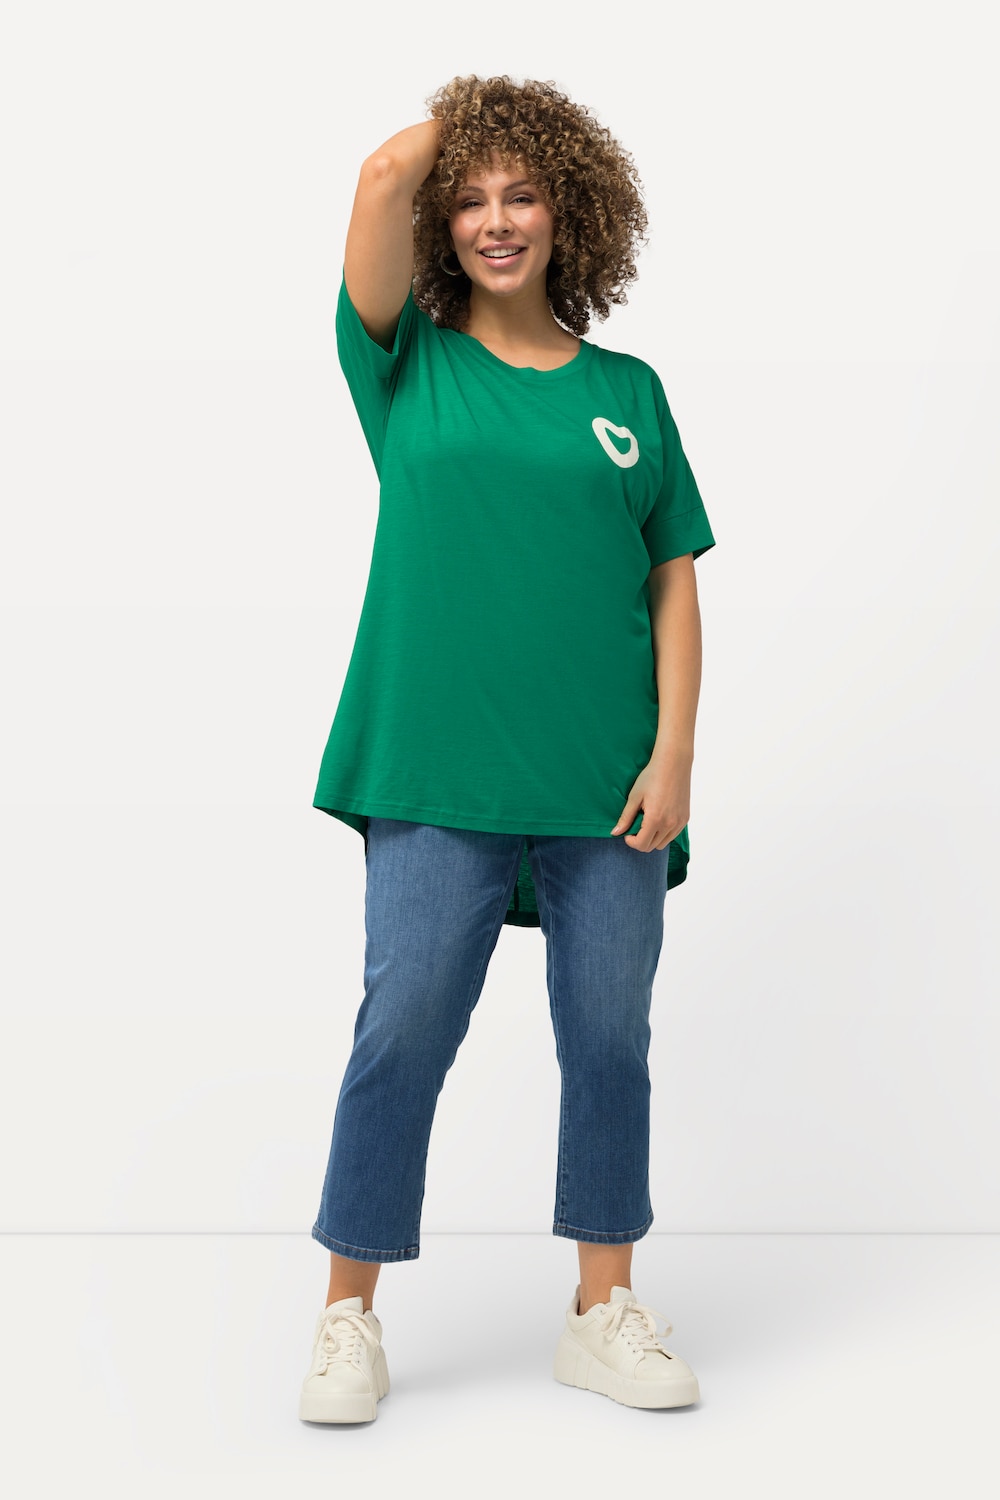 Grote Maten T-shirt, Dames, groen, Maat: 54/56, Katoen/Synthetische vezels, Ulla Popken